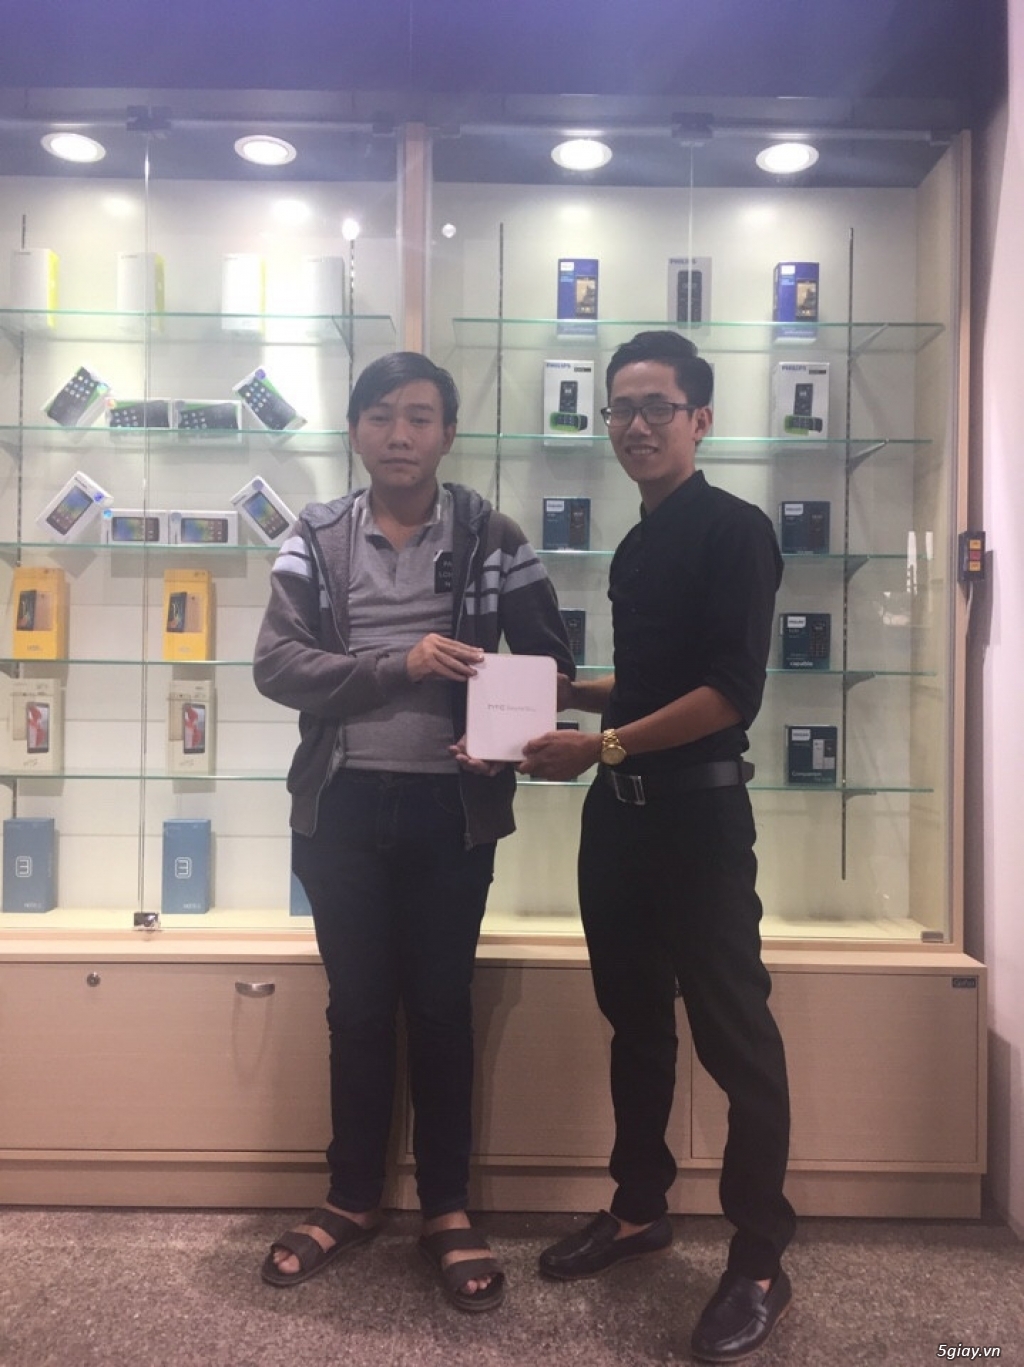 DidongExpress.vn - Samsung J5 Prime ra mắt với giá chỉ 4tr490k cho anh em 5giay - 7